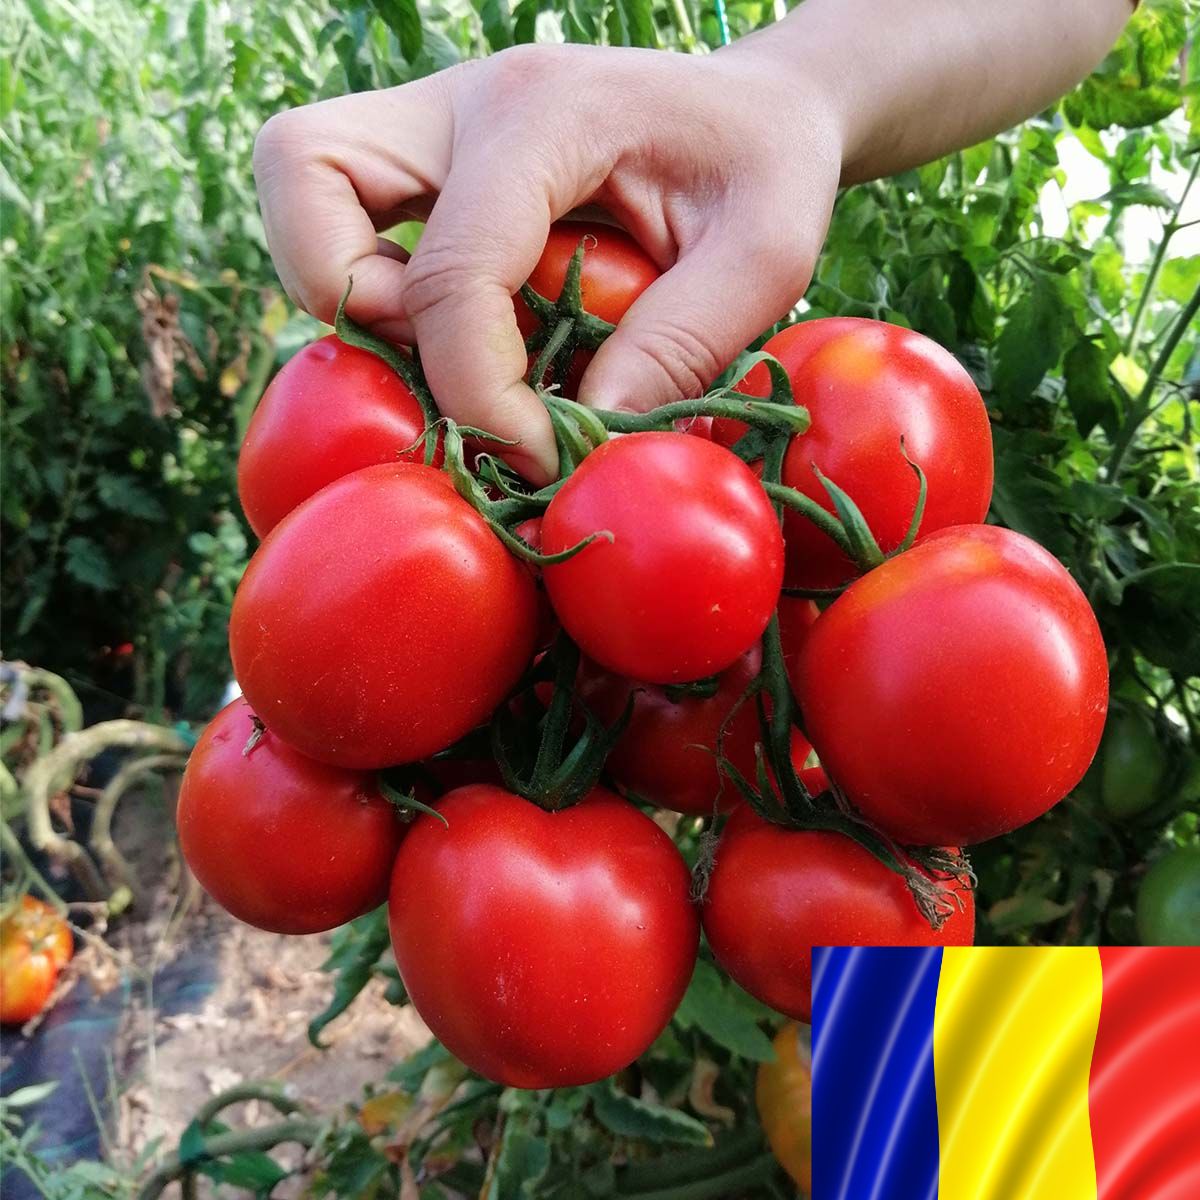 Tomate - Seminte romanesti de tomate KRISTINICA, 5gr, SCDL Buzau, hectarul.ro